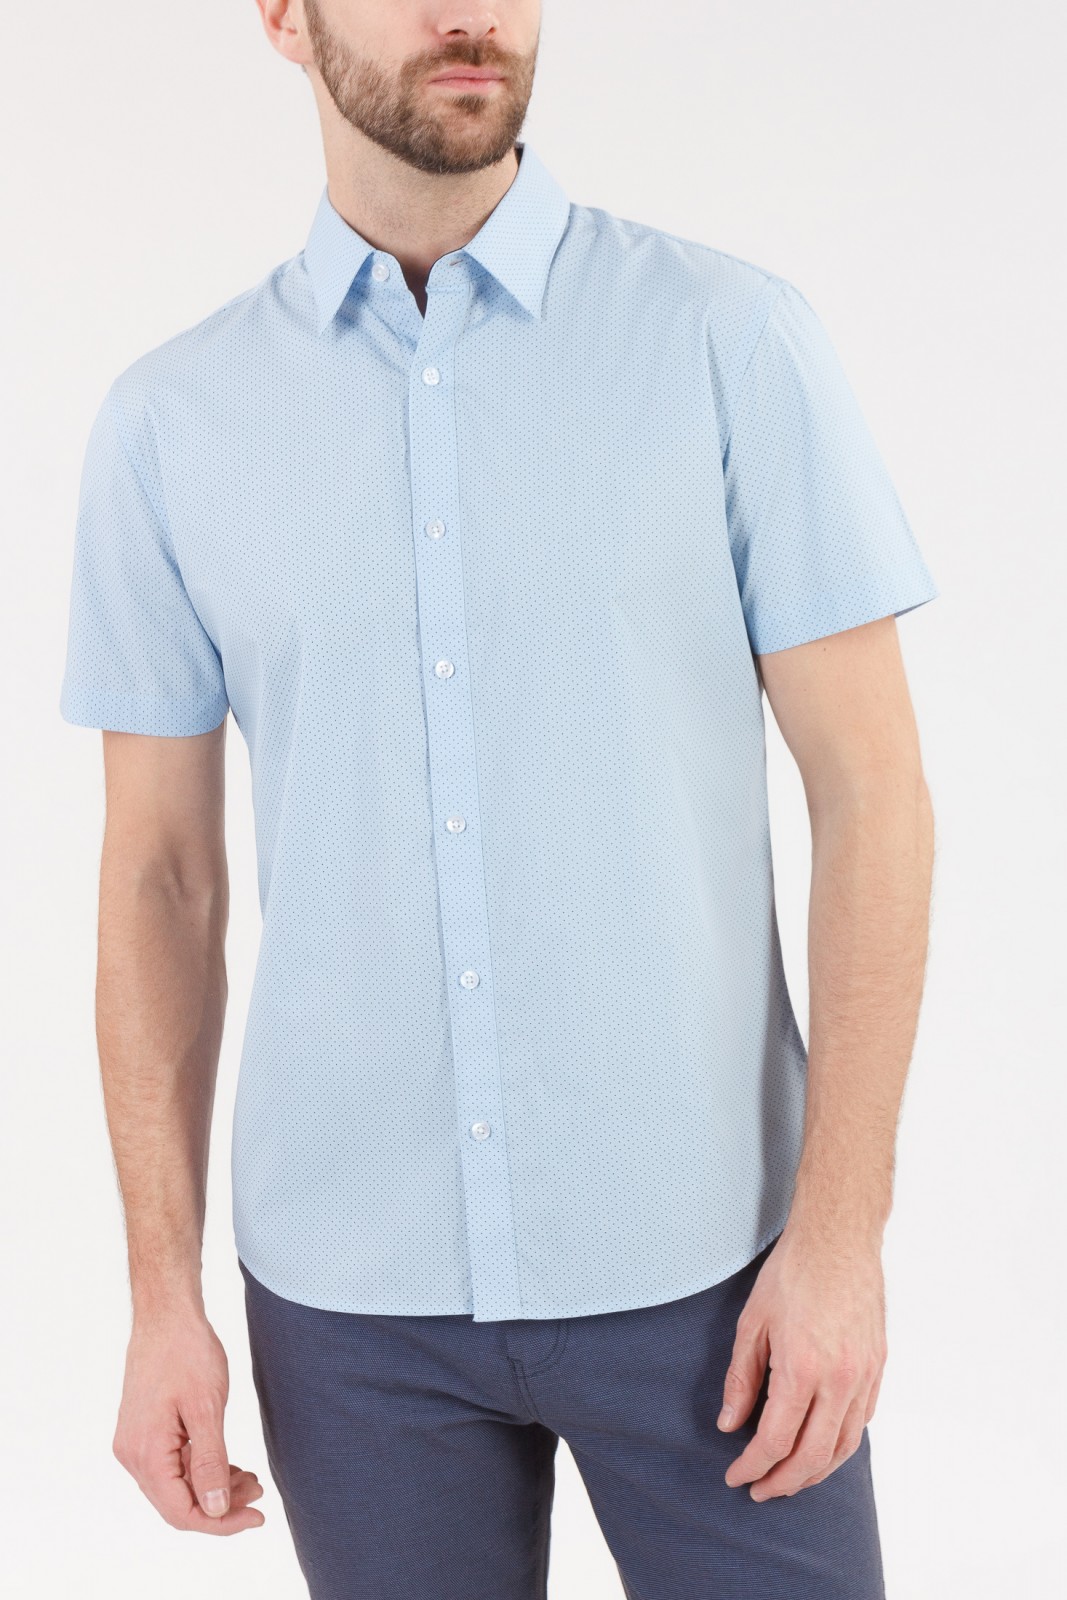 Рубашка с  короткими рукавами zolla 010222259052, цвет светло-голубой, размер S